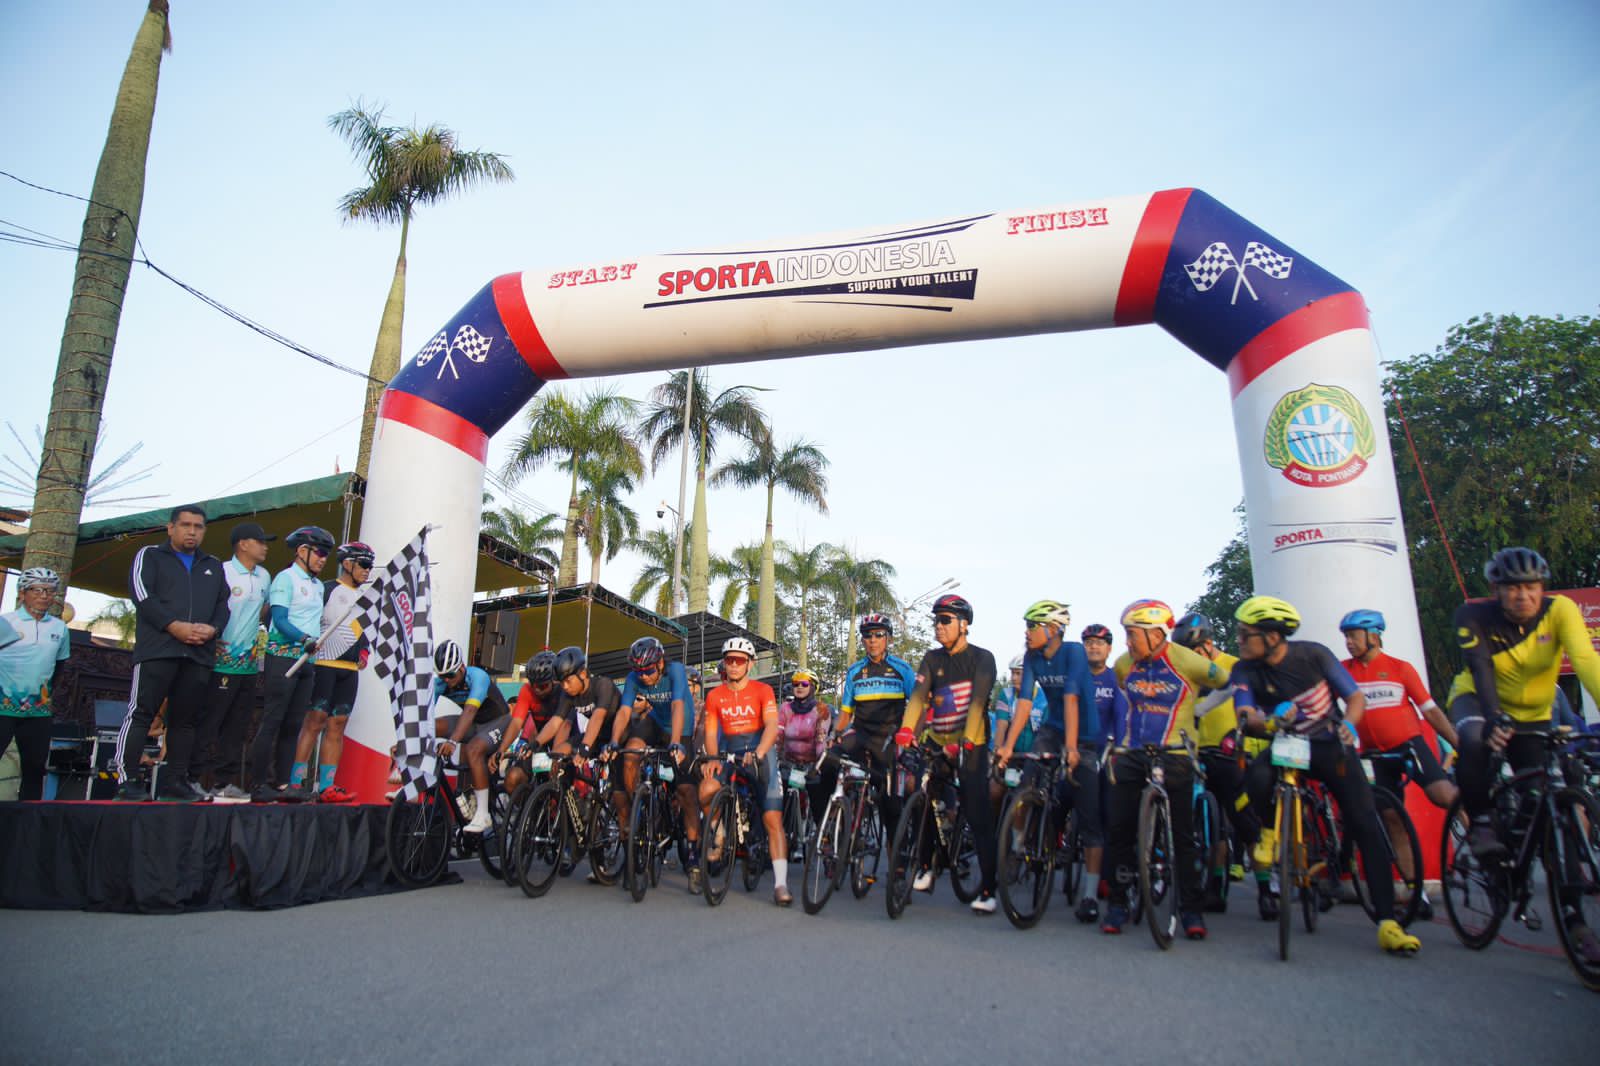 Wali Kota Pontianak, Edi Rusdi Kamtono mengangkat bendera start menandai dimulainya Happy Cycling Pontianak. (Foto: Prokopim Pontianak)